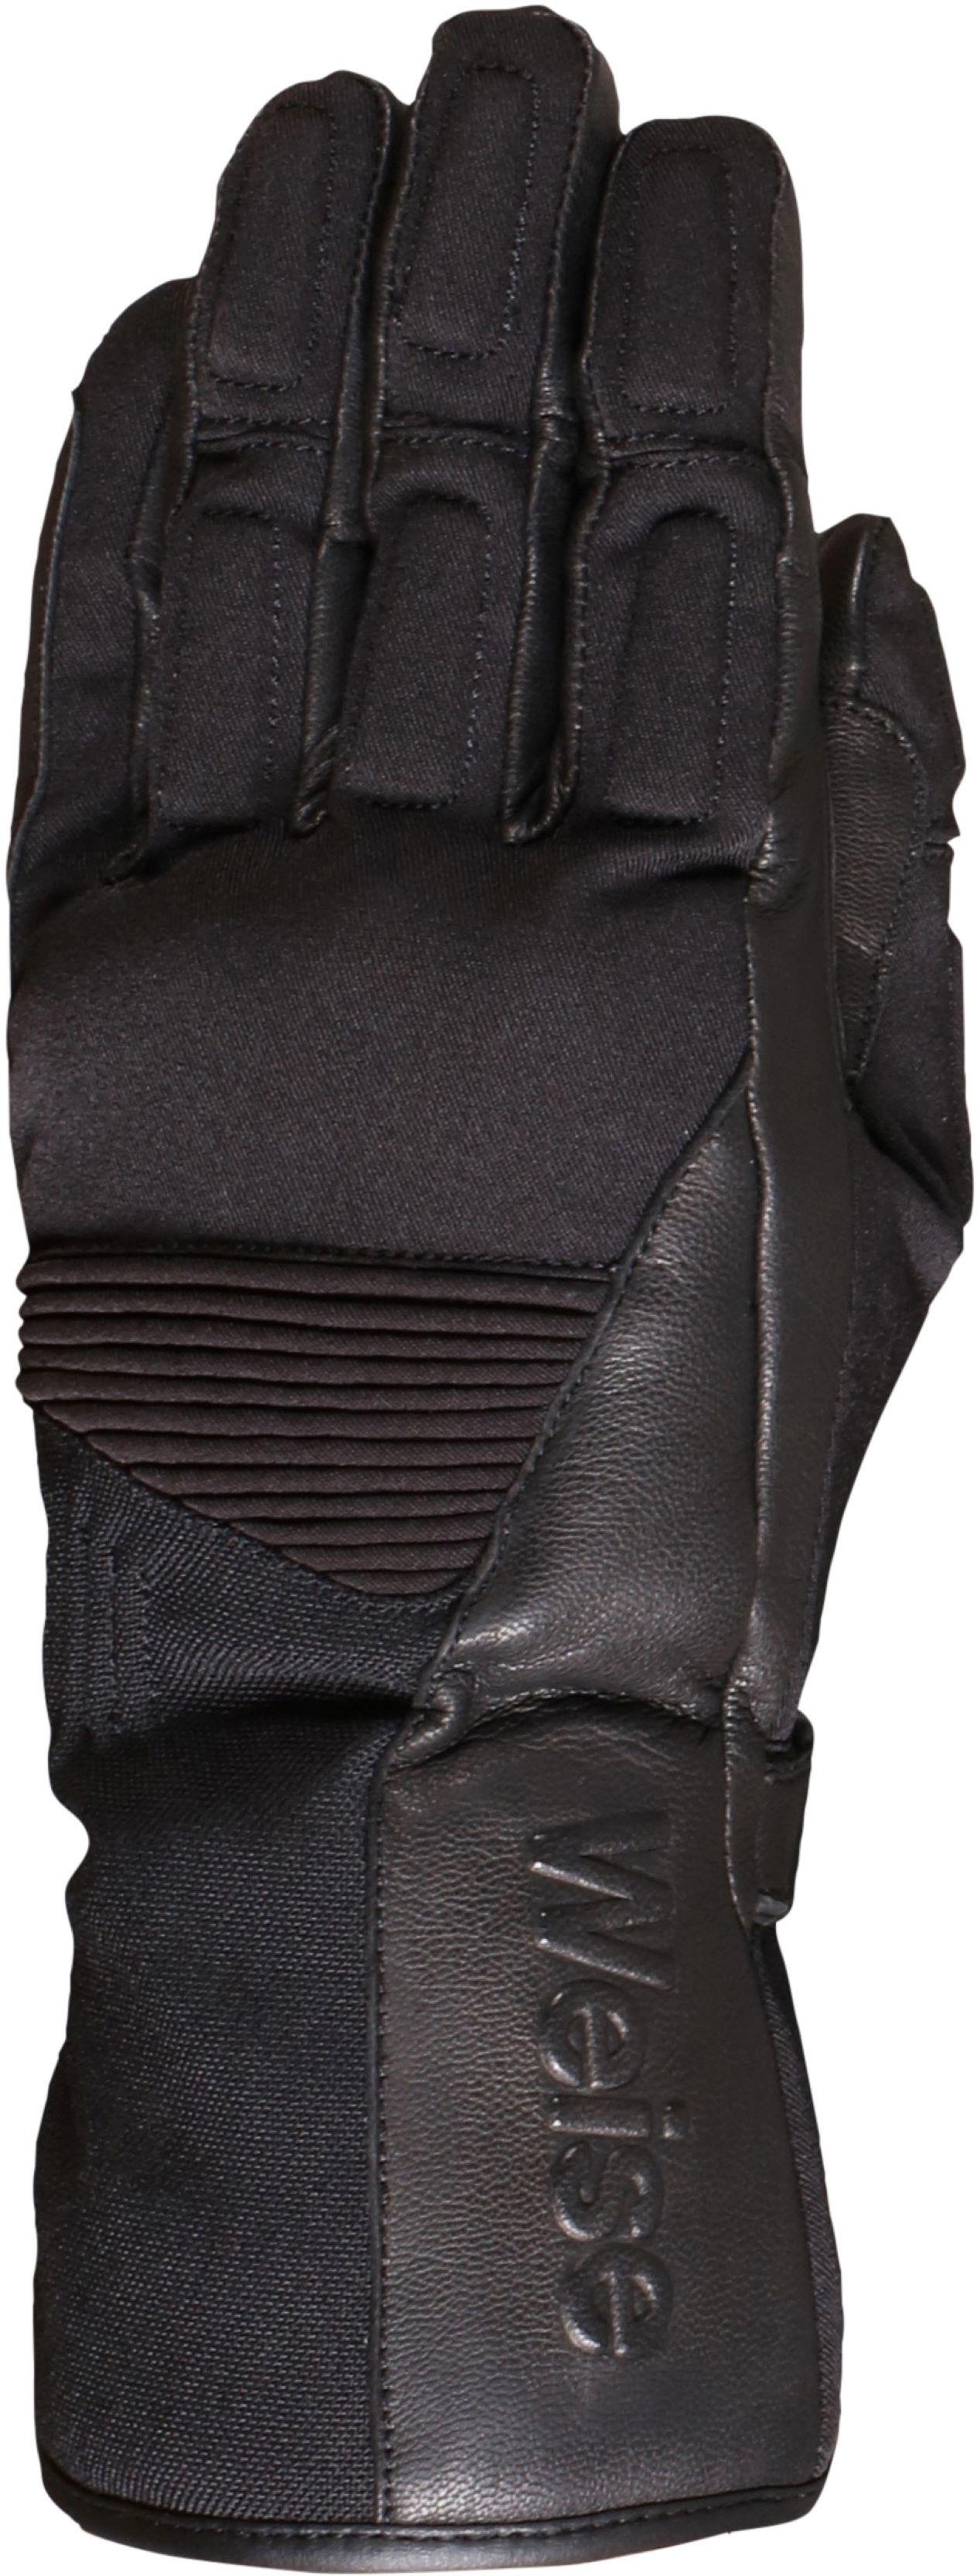 Weise Rider Motorcycle Gloves - Black, 2Xl